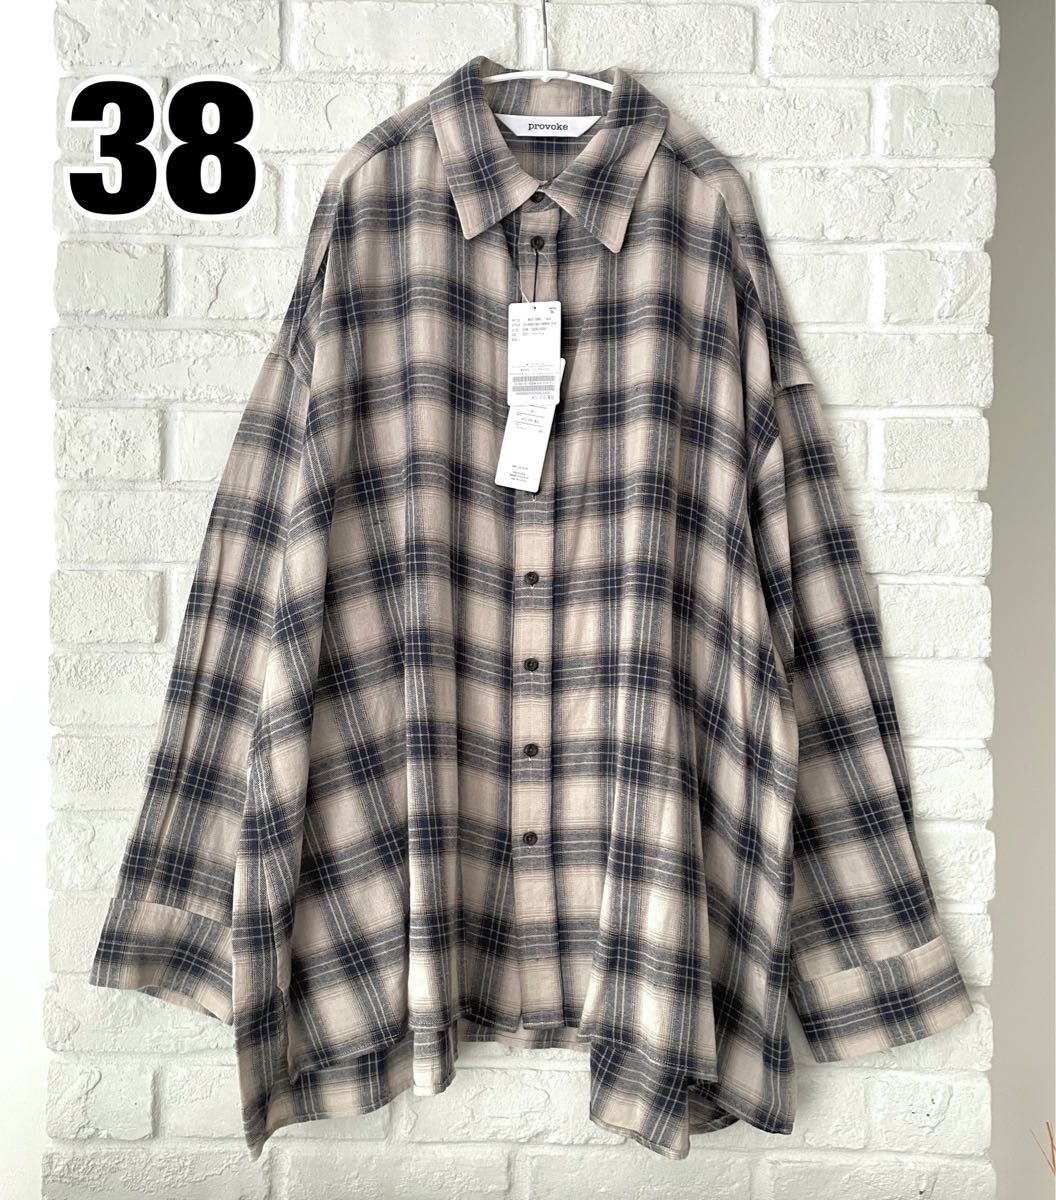 【PROVOKE/プロヴォーク】Oversized check Shirt 38 オーバーサイズチェックシャツ